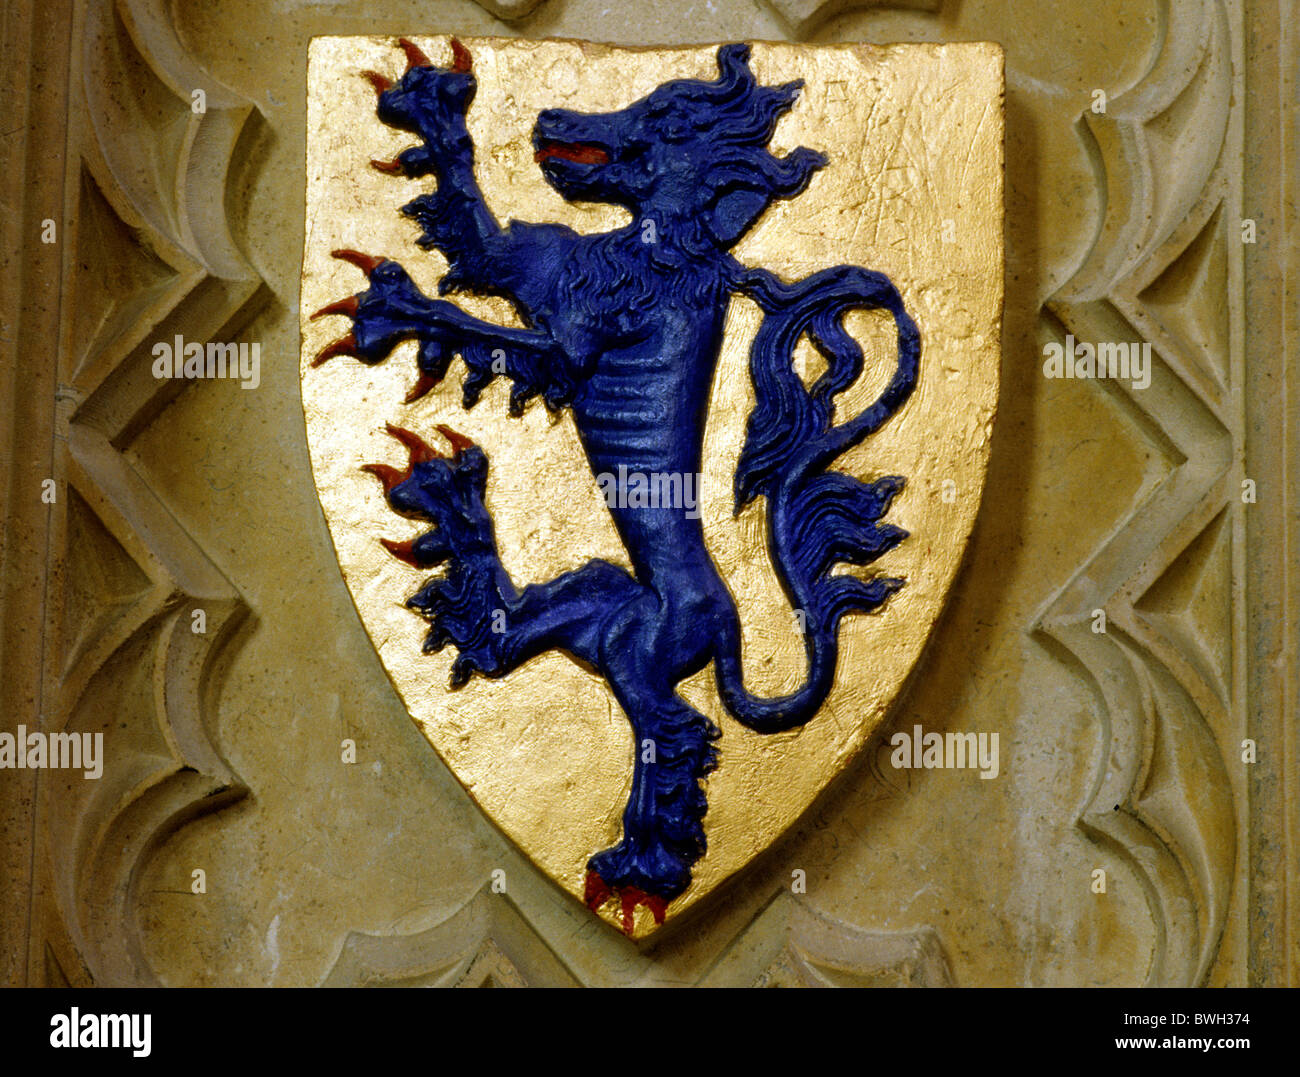 Por qué el Real Zaragoza luce un león rampante en su escudo?